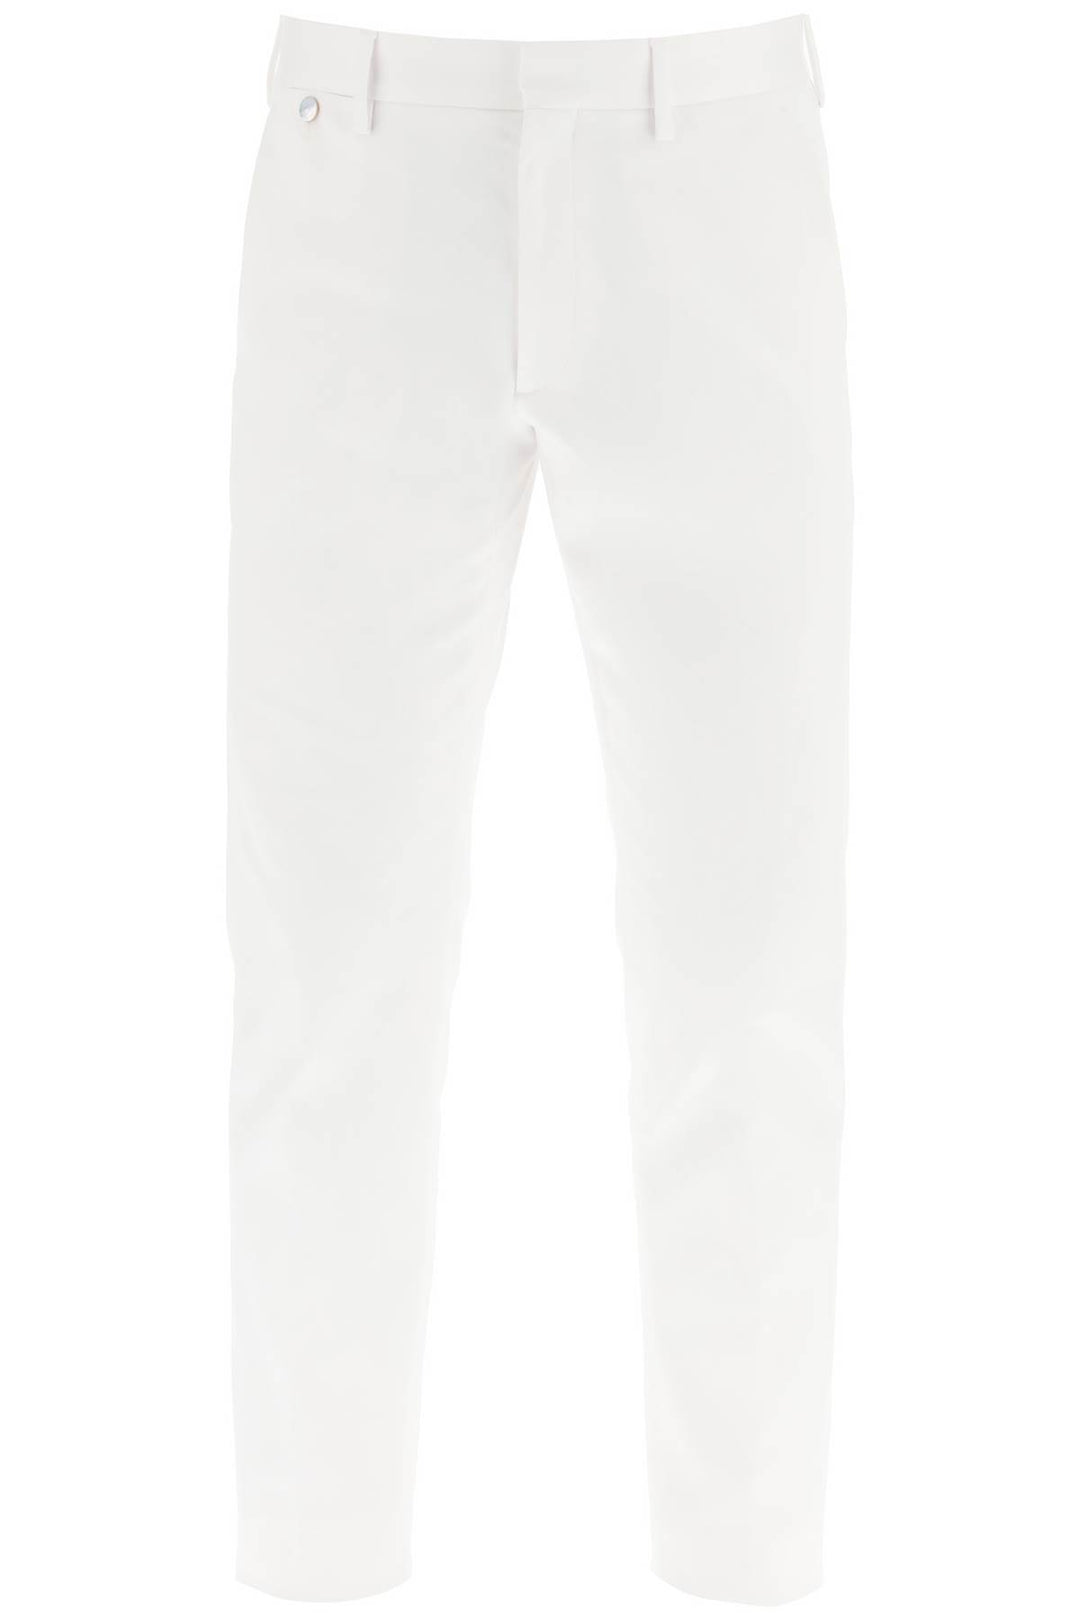 Agnona cotton chino pants-0